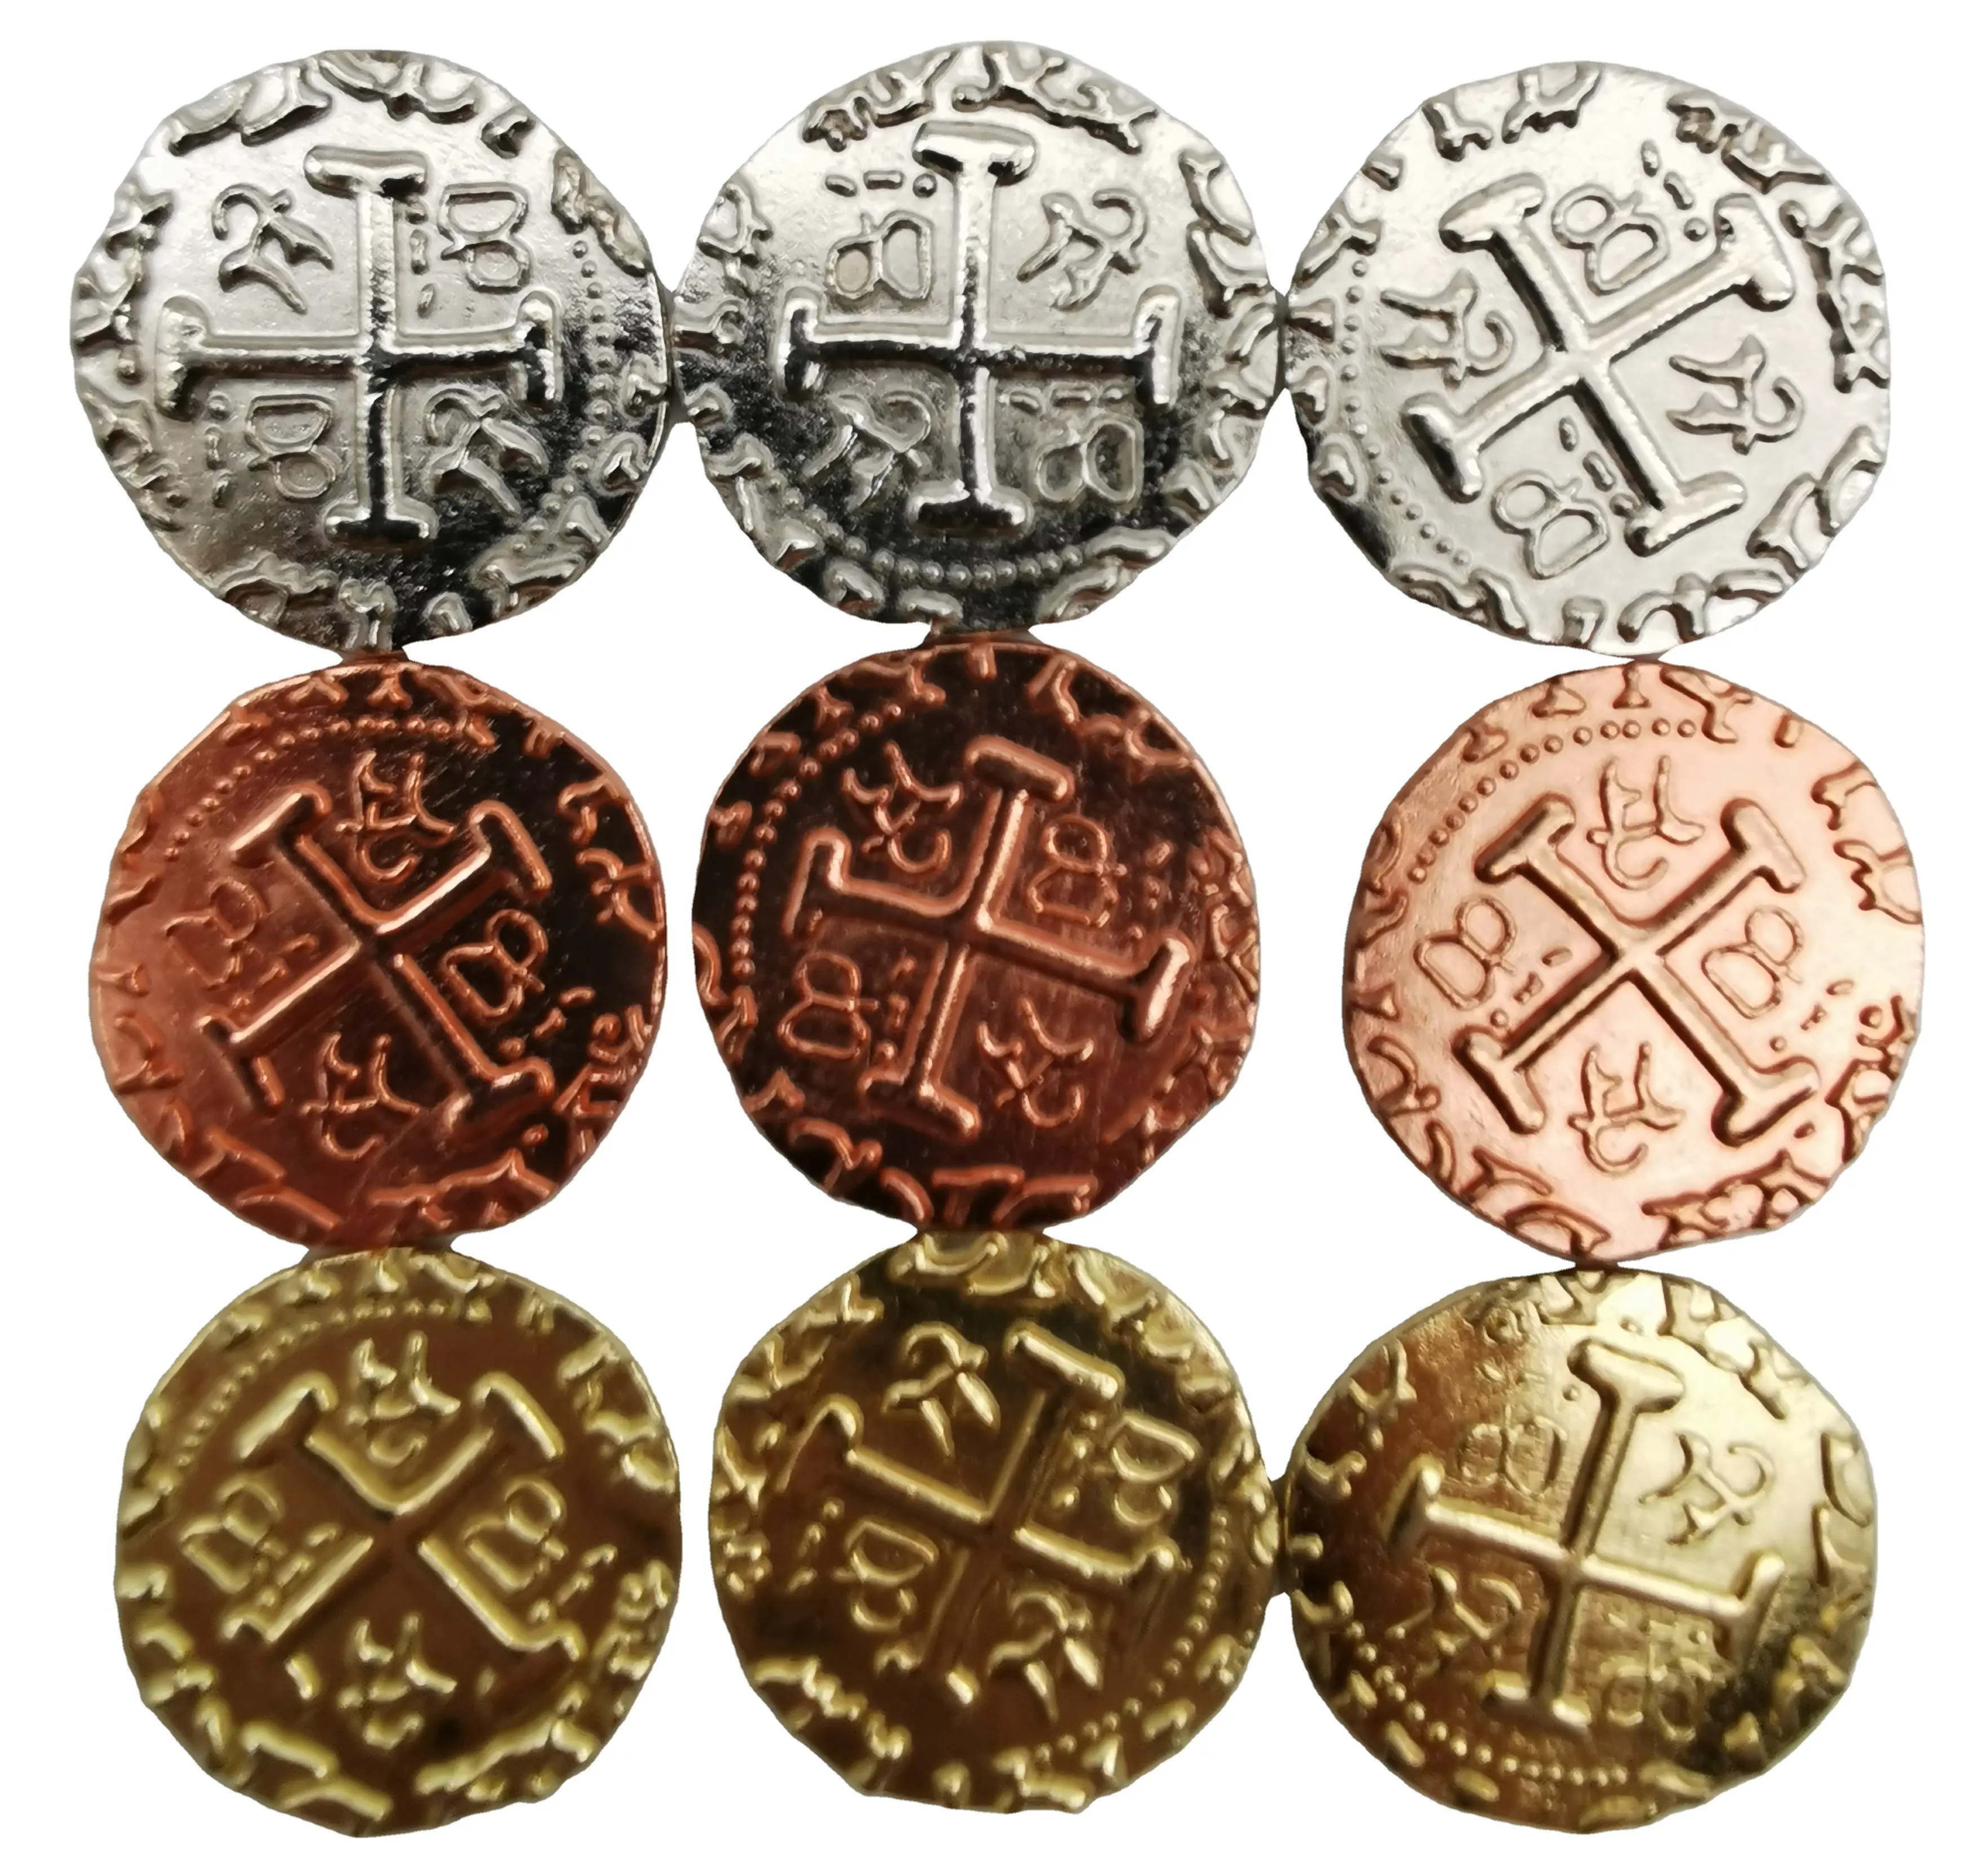 Металлическая игровая монета по более низкой цене золотые и серебряные многоразмерные античные металлические пиратские монеты для игры